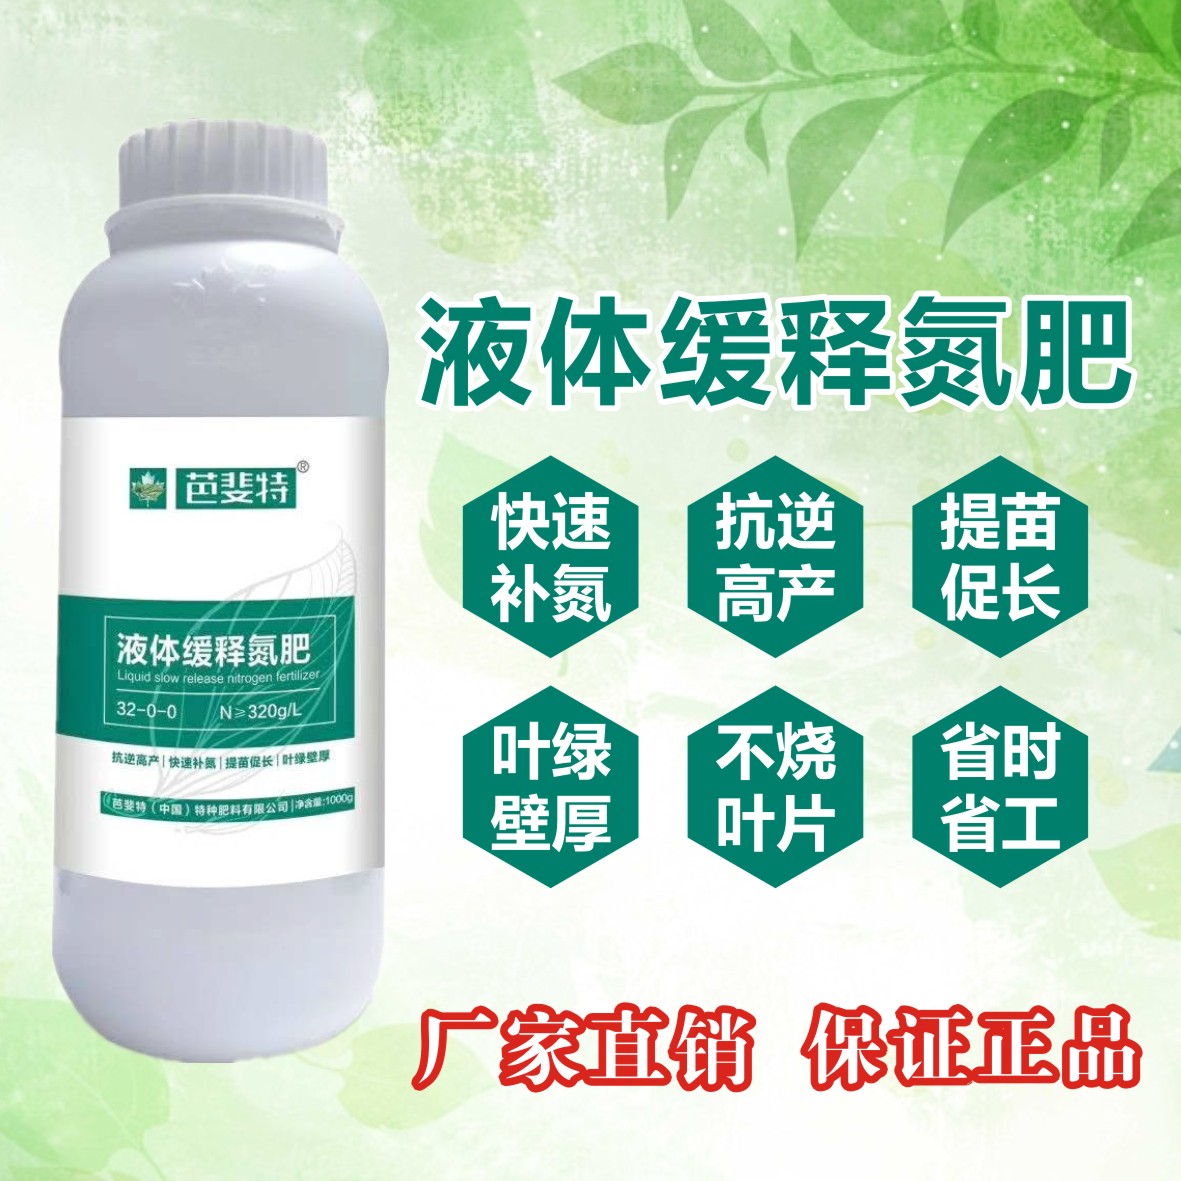 芭斐特（中国）特种肥料有限公司